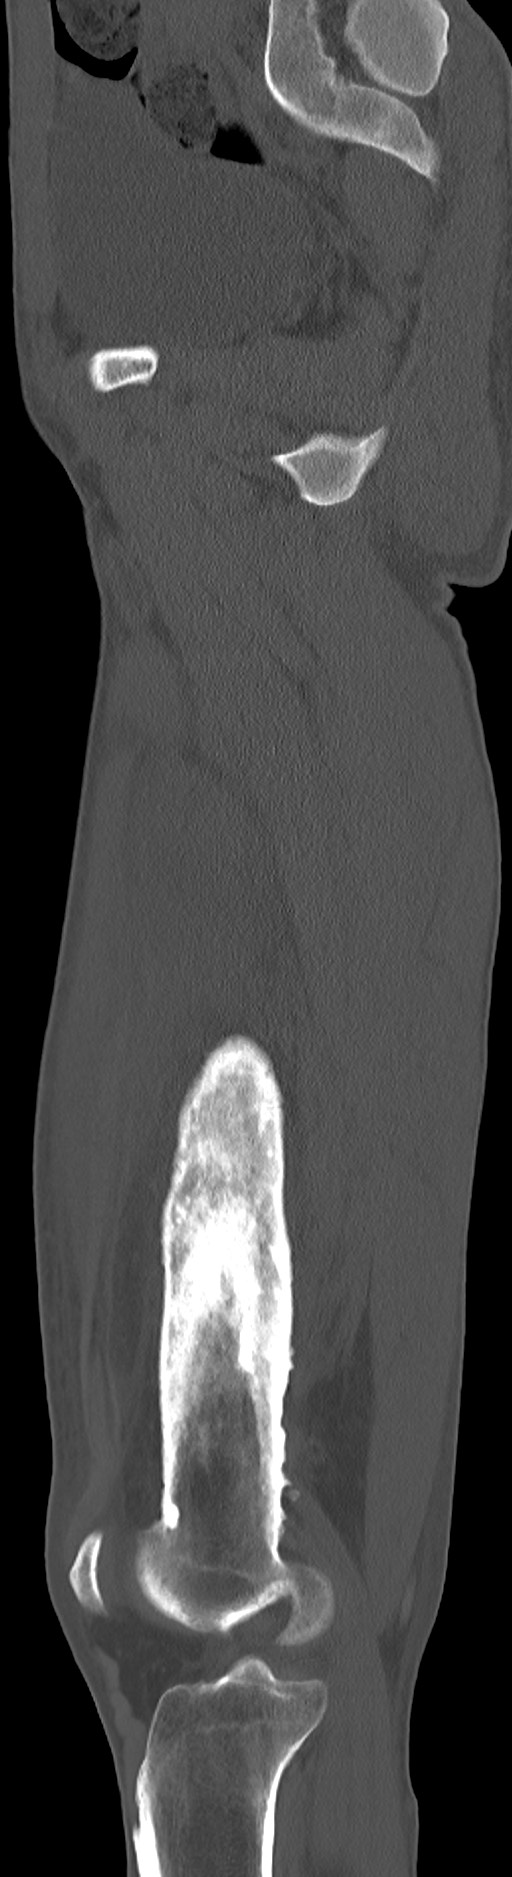 Chronic osteomyelitis (with sequestrum) (Radiopaedia 74813-85822 C 70).jpg